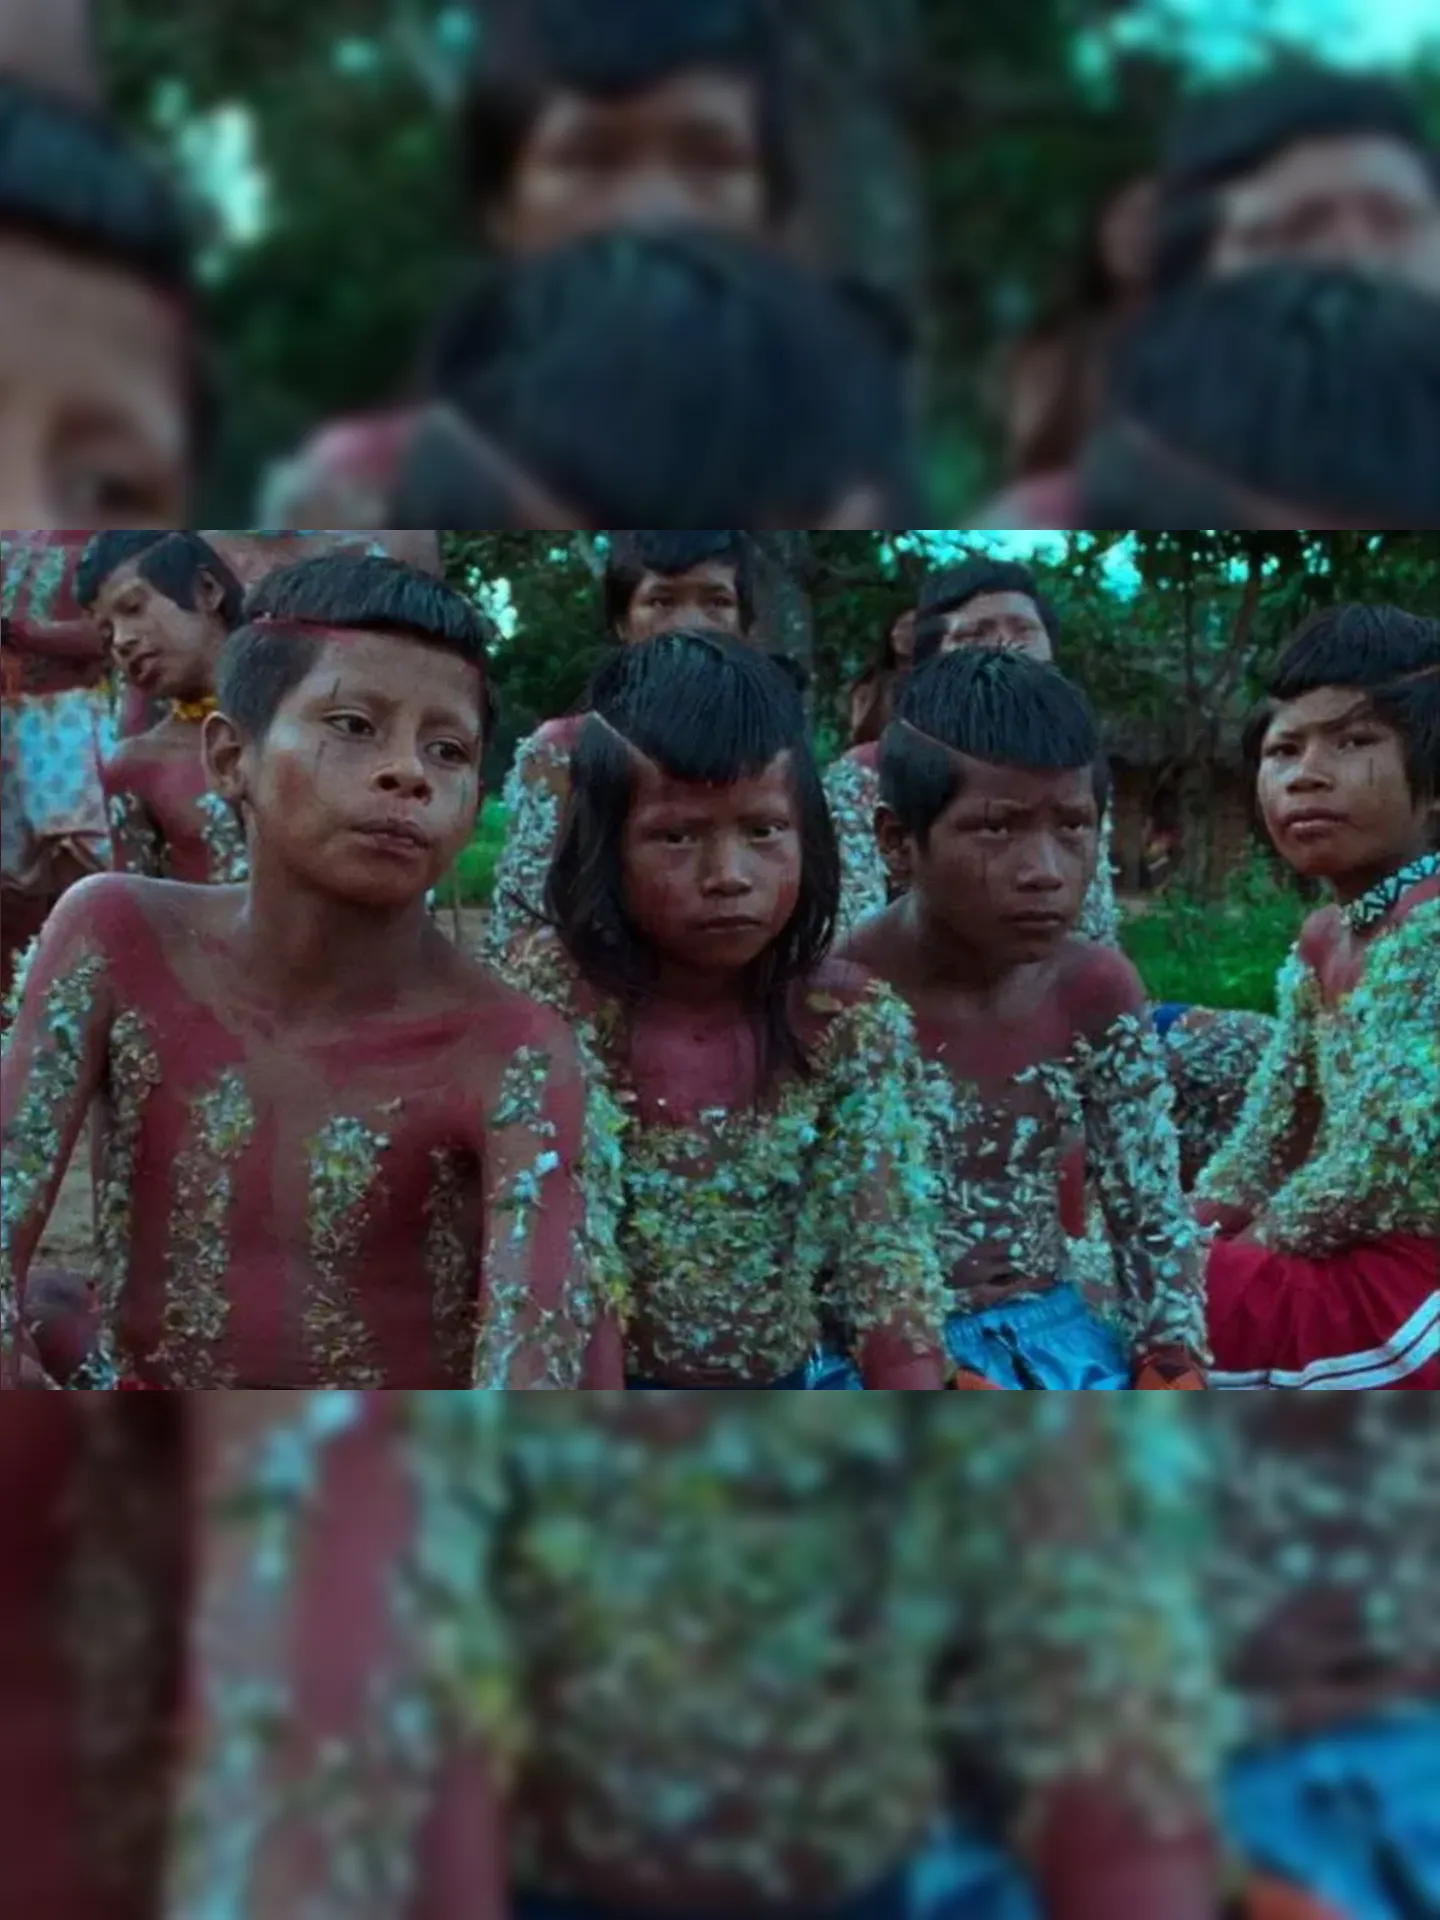 Filme aborda história dos Krahô, povo indígena que vive no norte do Tocantins, na fronteira com o Maranhão e o Piauí